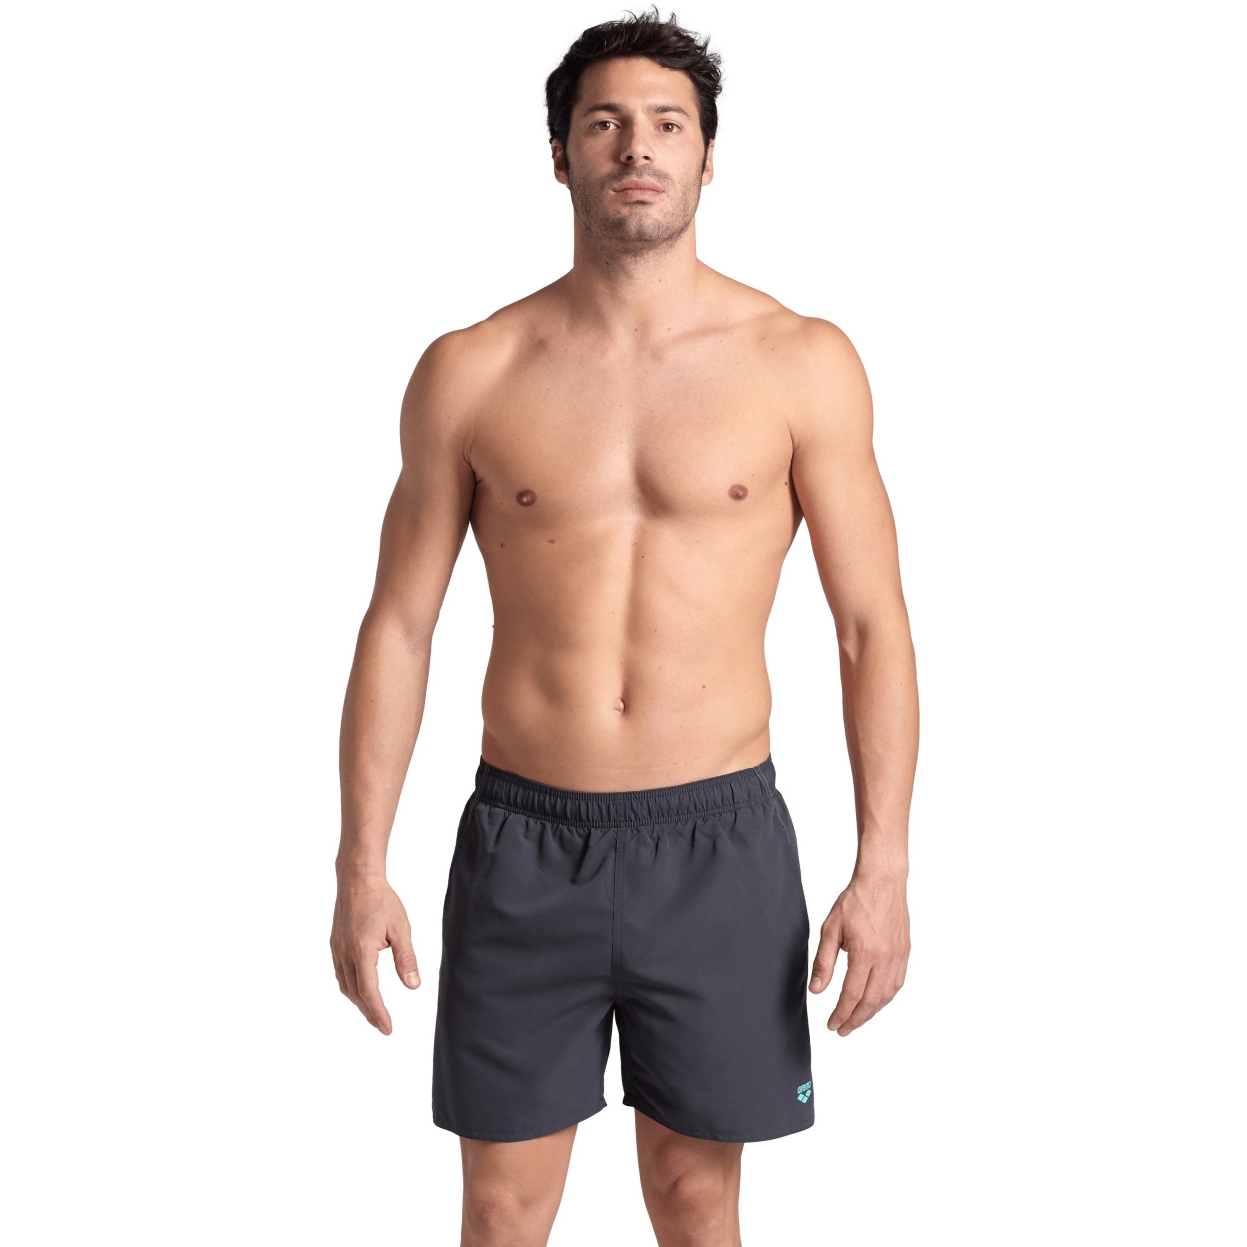 Produktbild von arena Fundamentals R Boxer Beach Shorts Herren - Asphalt/Water